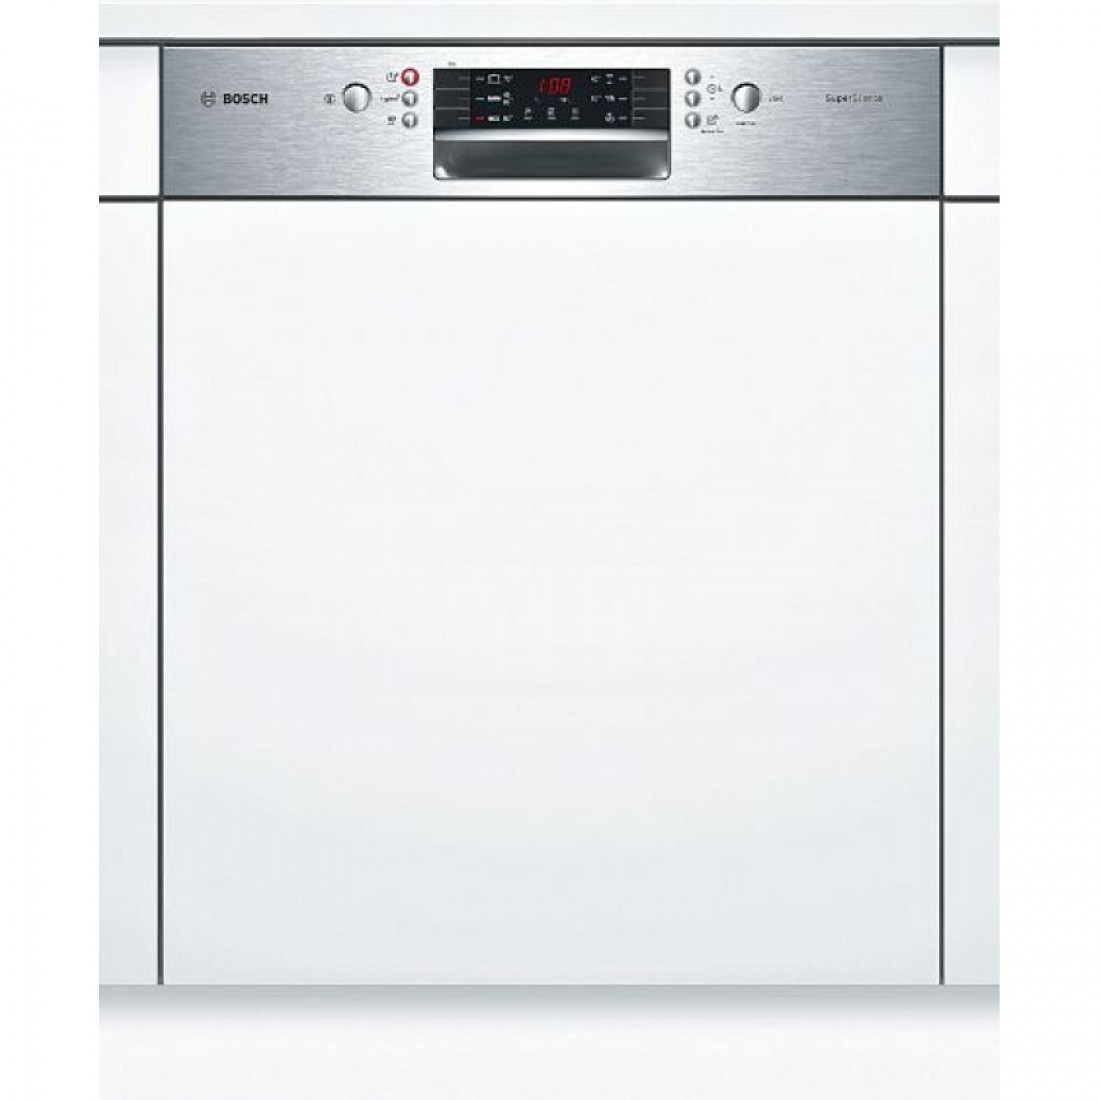 Посудомойка бош 60 встраиваемая купить. Посудомоечная машина Siemens SN 536s01 ke. Посудомоечная машина Bosch SMI 40m65. Bosch SMI 46ks00 t. Посудомоечная машина Bosch SMI 46ks01 e.